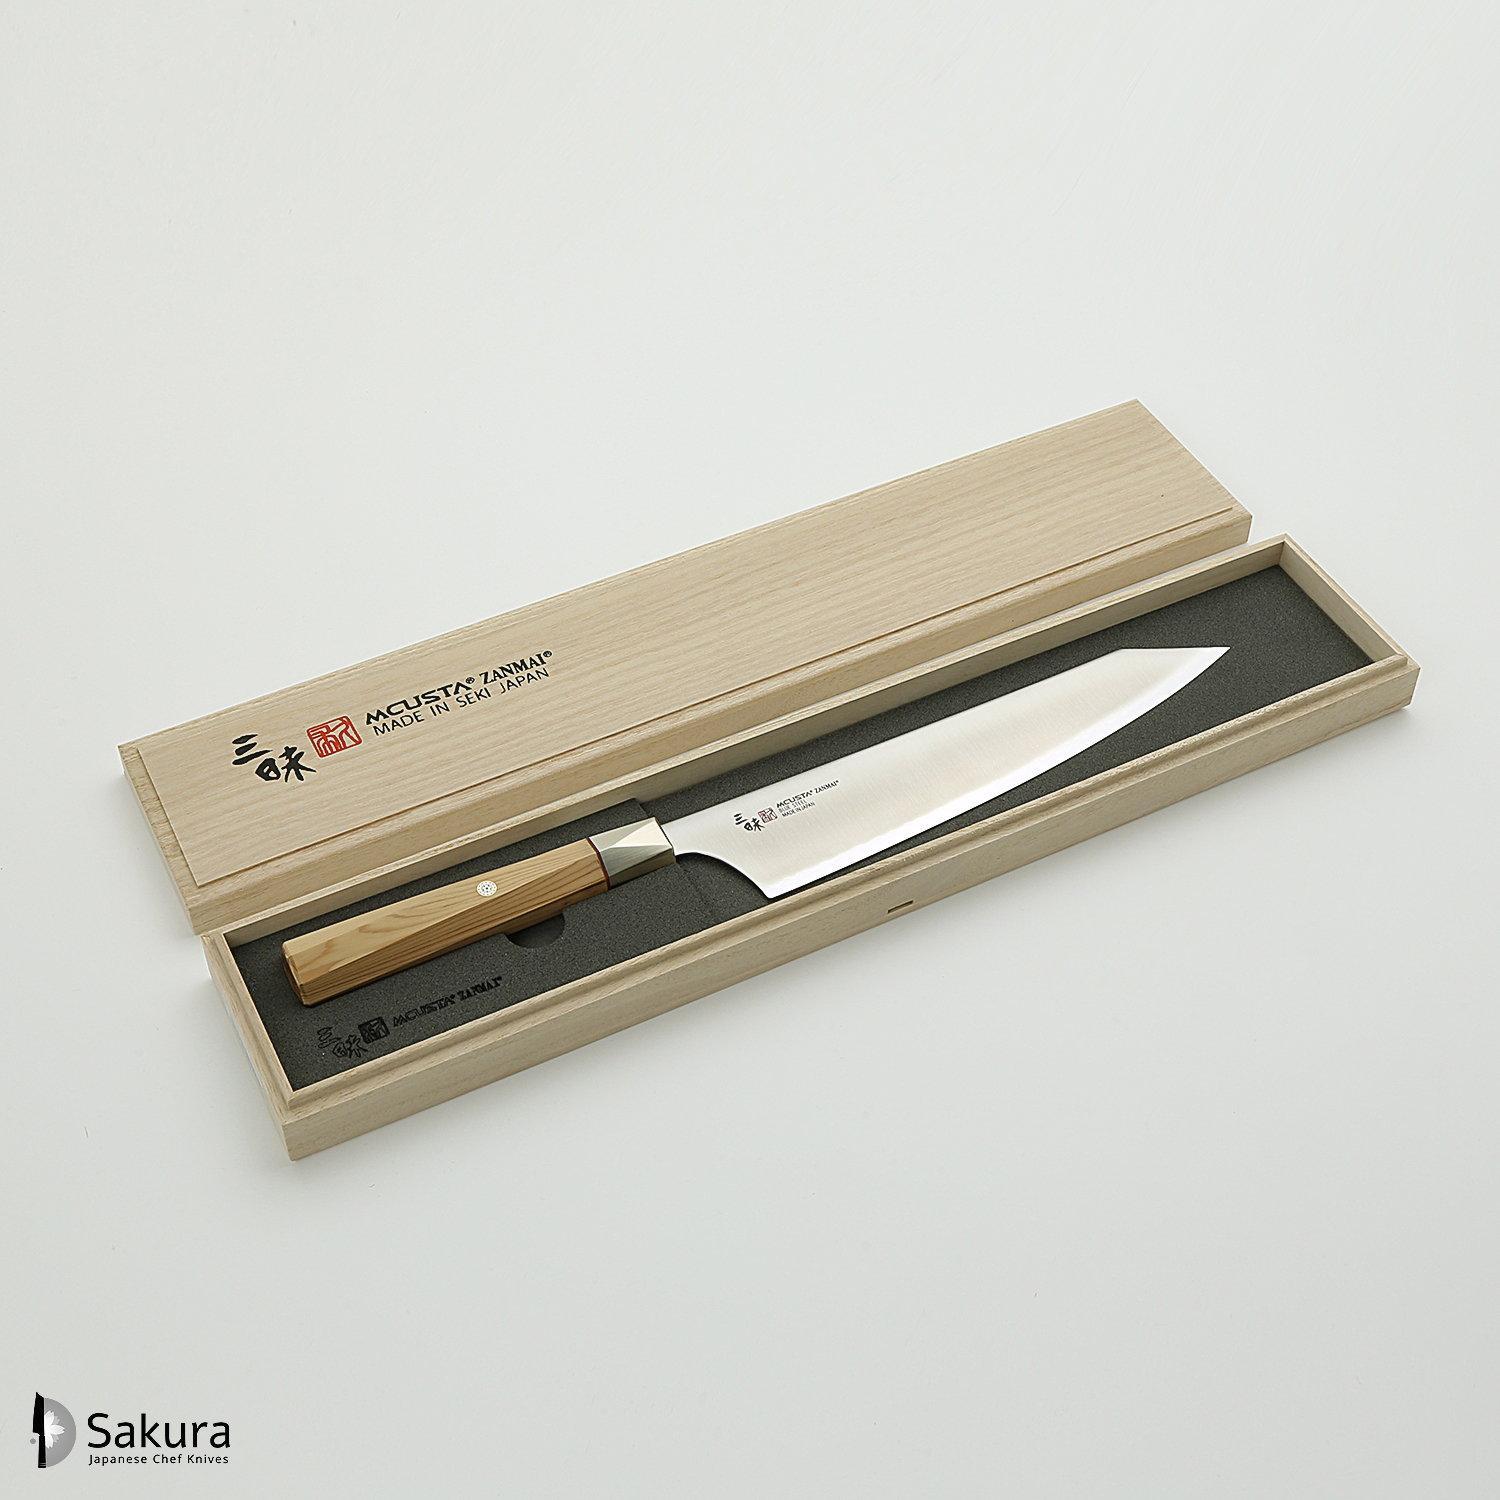 סכין שף רב-תכליתית גִּיוּטוֹ 210מ״מ מחושלת בעבודת יד 3 שכבות: פלדת פחמן יפנית מתקדמת מסוג Aogami Super עטופה פלדת אל-חלד גימור מט מלוטש מקוסטה זאנמאיי יפן ZBX-5005B